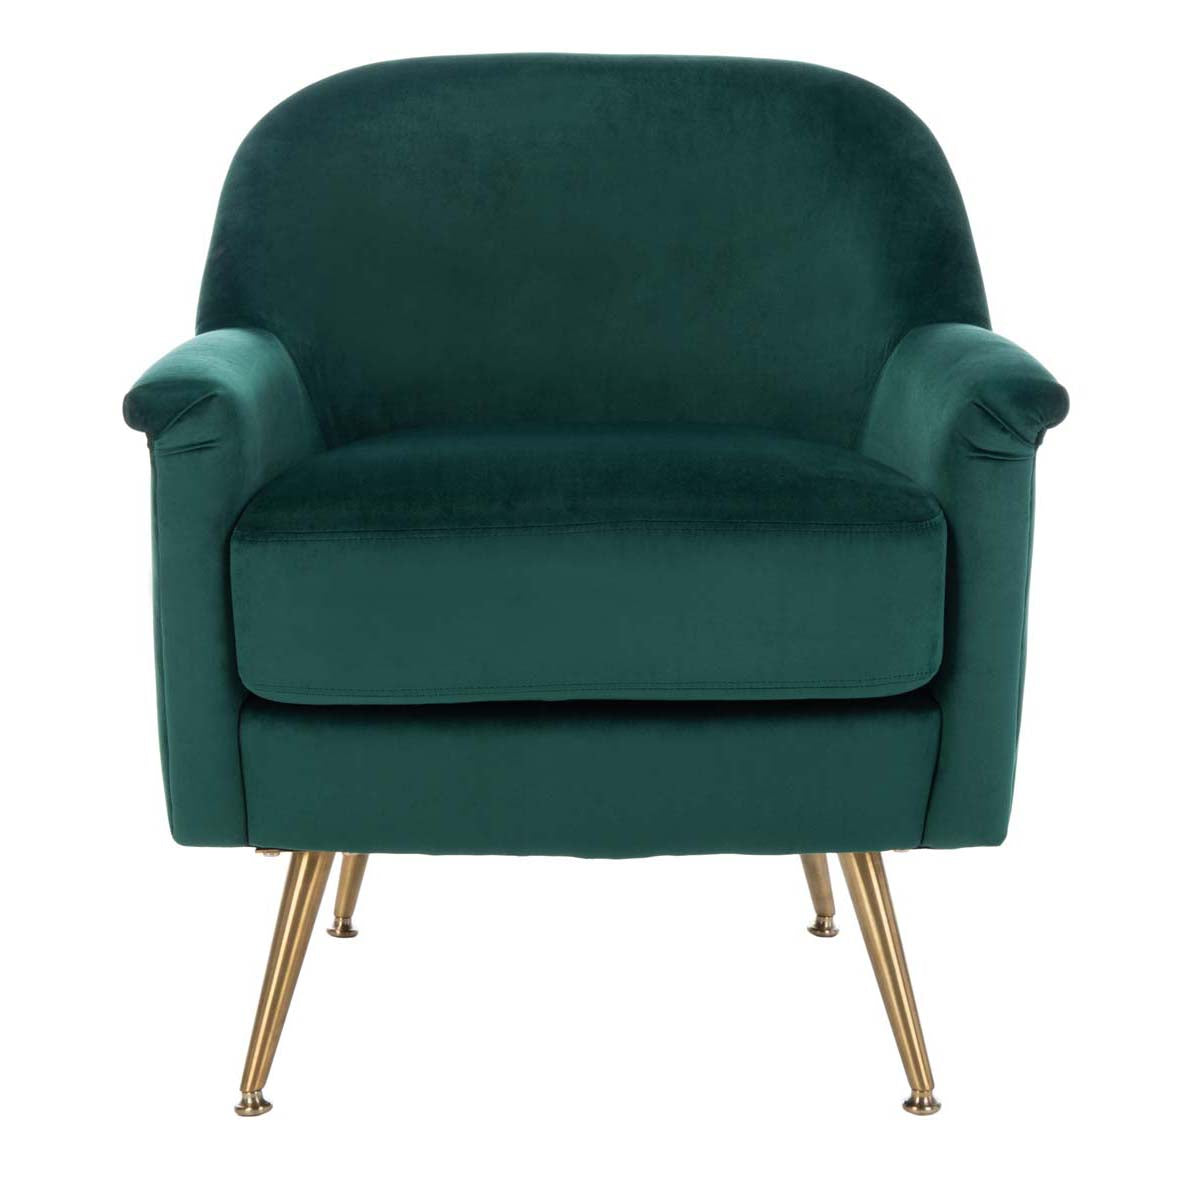 Safavieh Brienne Mid Century Arm Chair , ACH4506 - Emerald Velvet/Brass